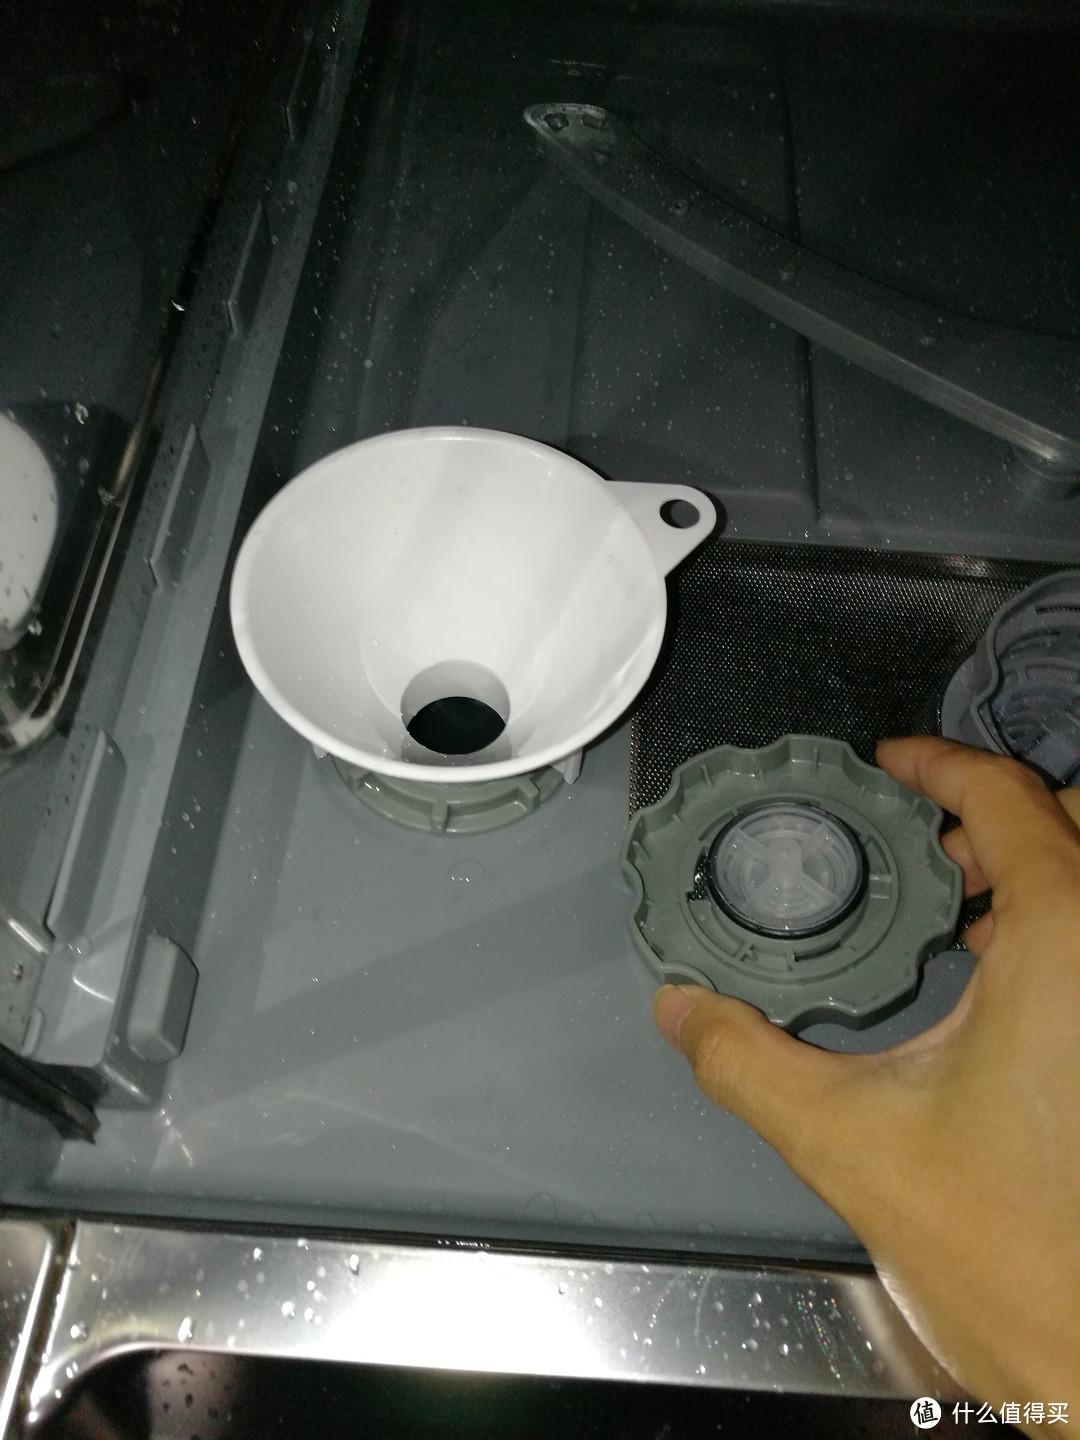 #原创新人#Midea 美的 WQP8-3801-CN 洗碗机 使用报告——谨以此文致敬洗碗机评测达人“魅惑蓝心”